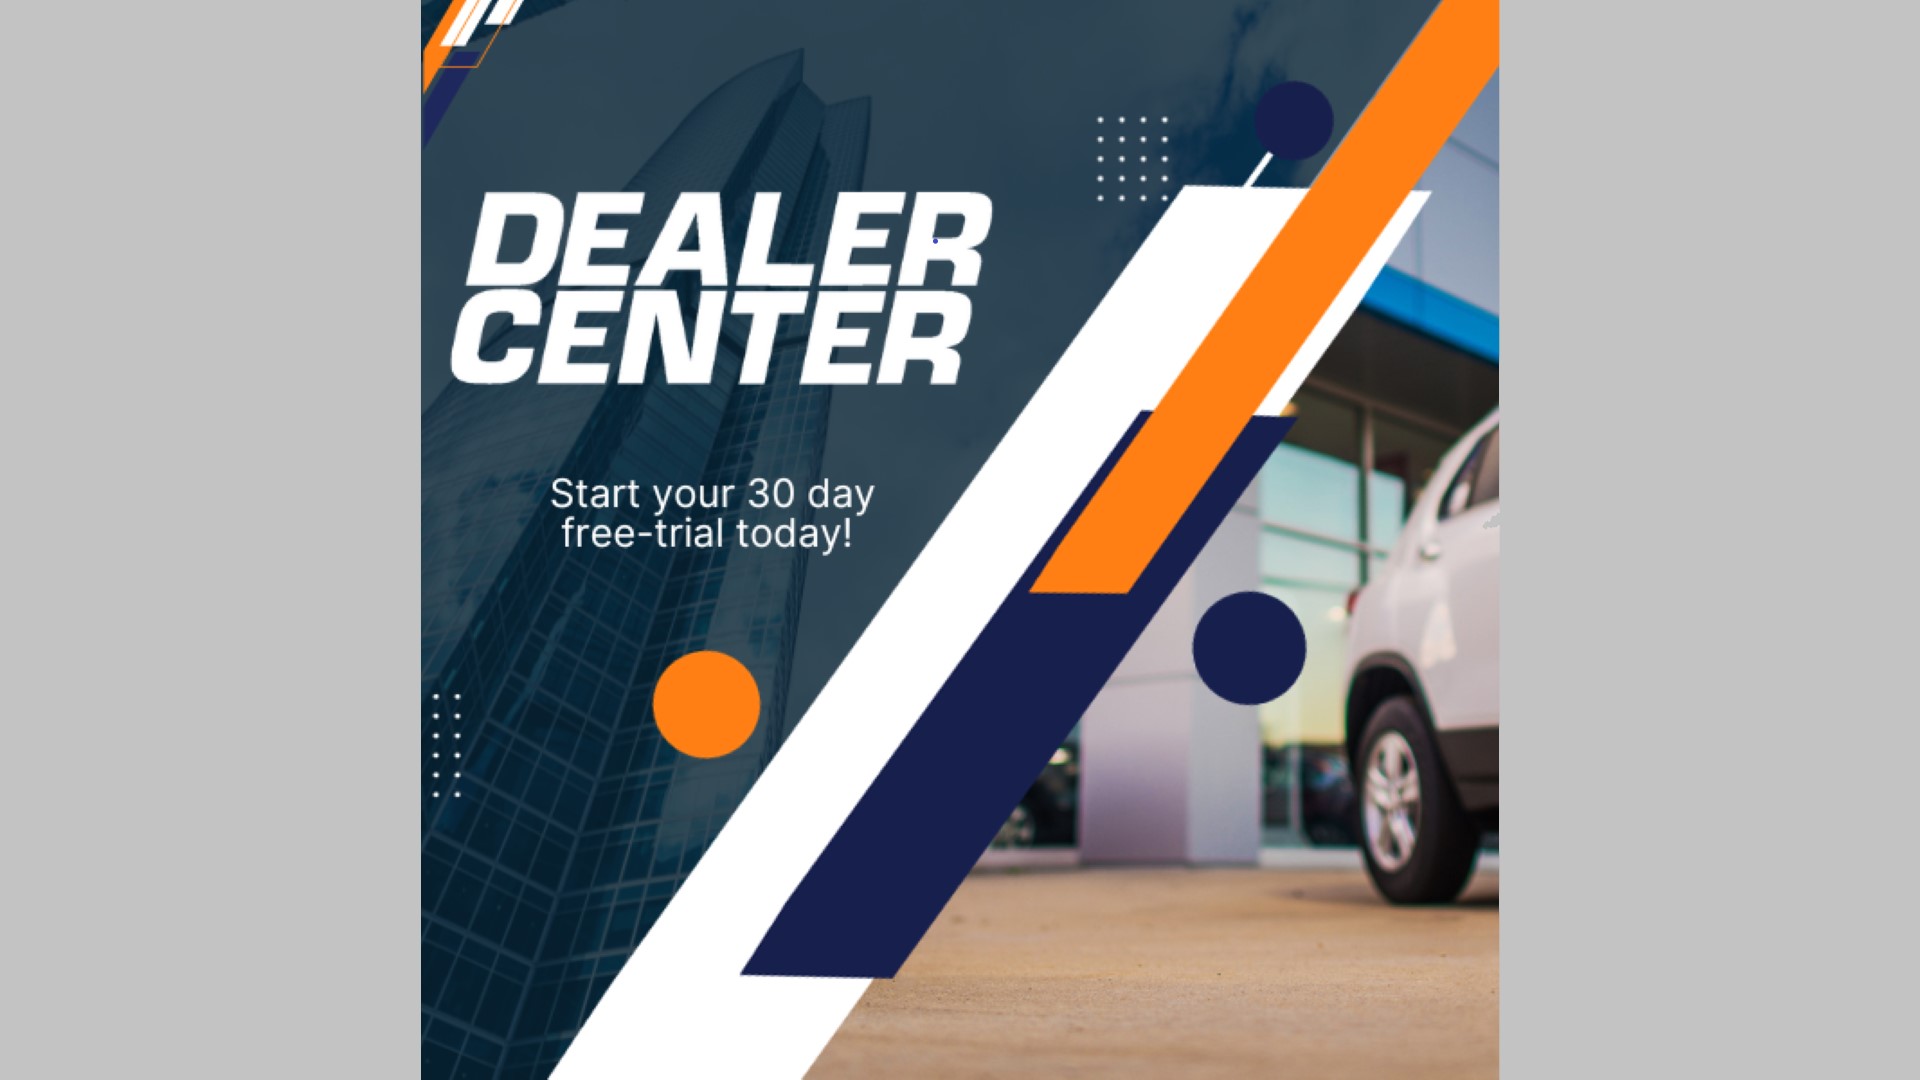 Dealer Center